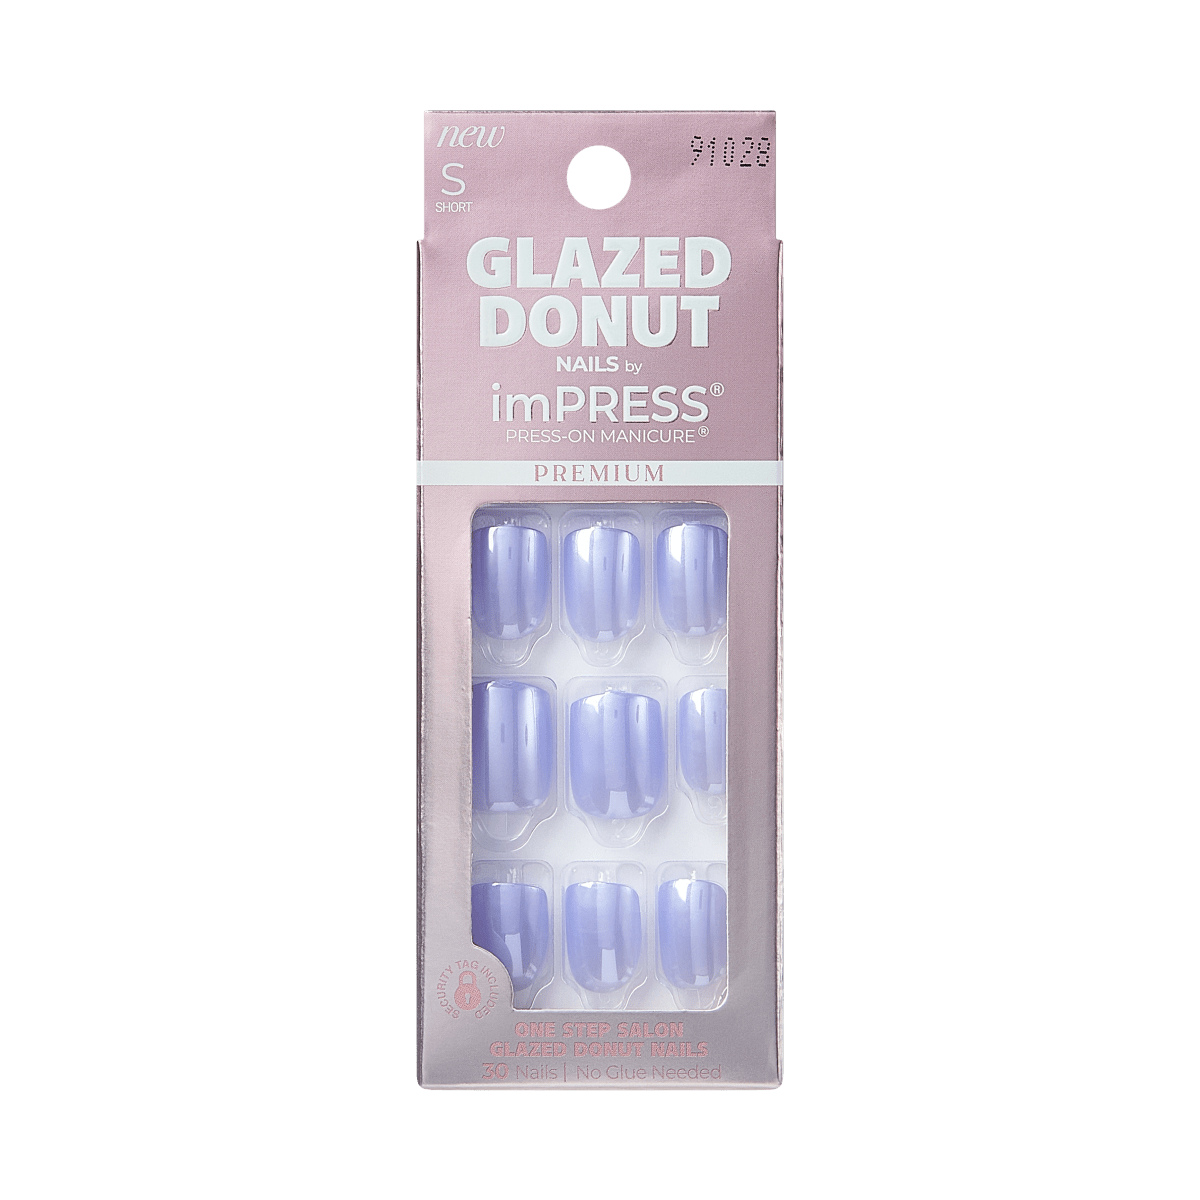 imPRESS Glazed Donut Press-On Manicure - Berry Glazed